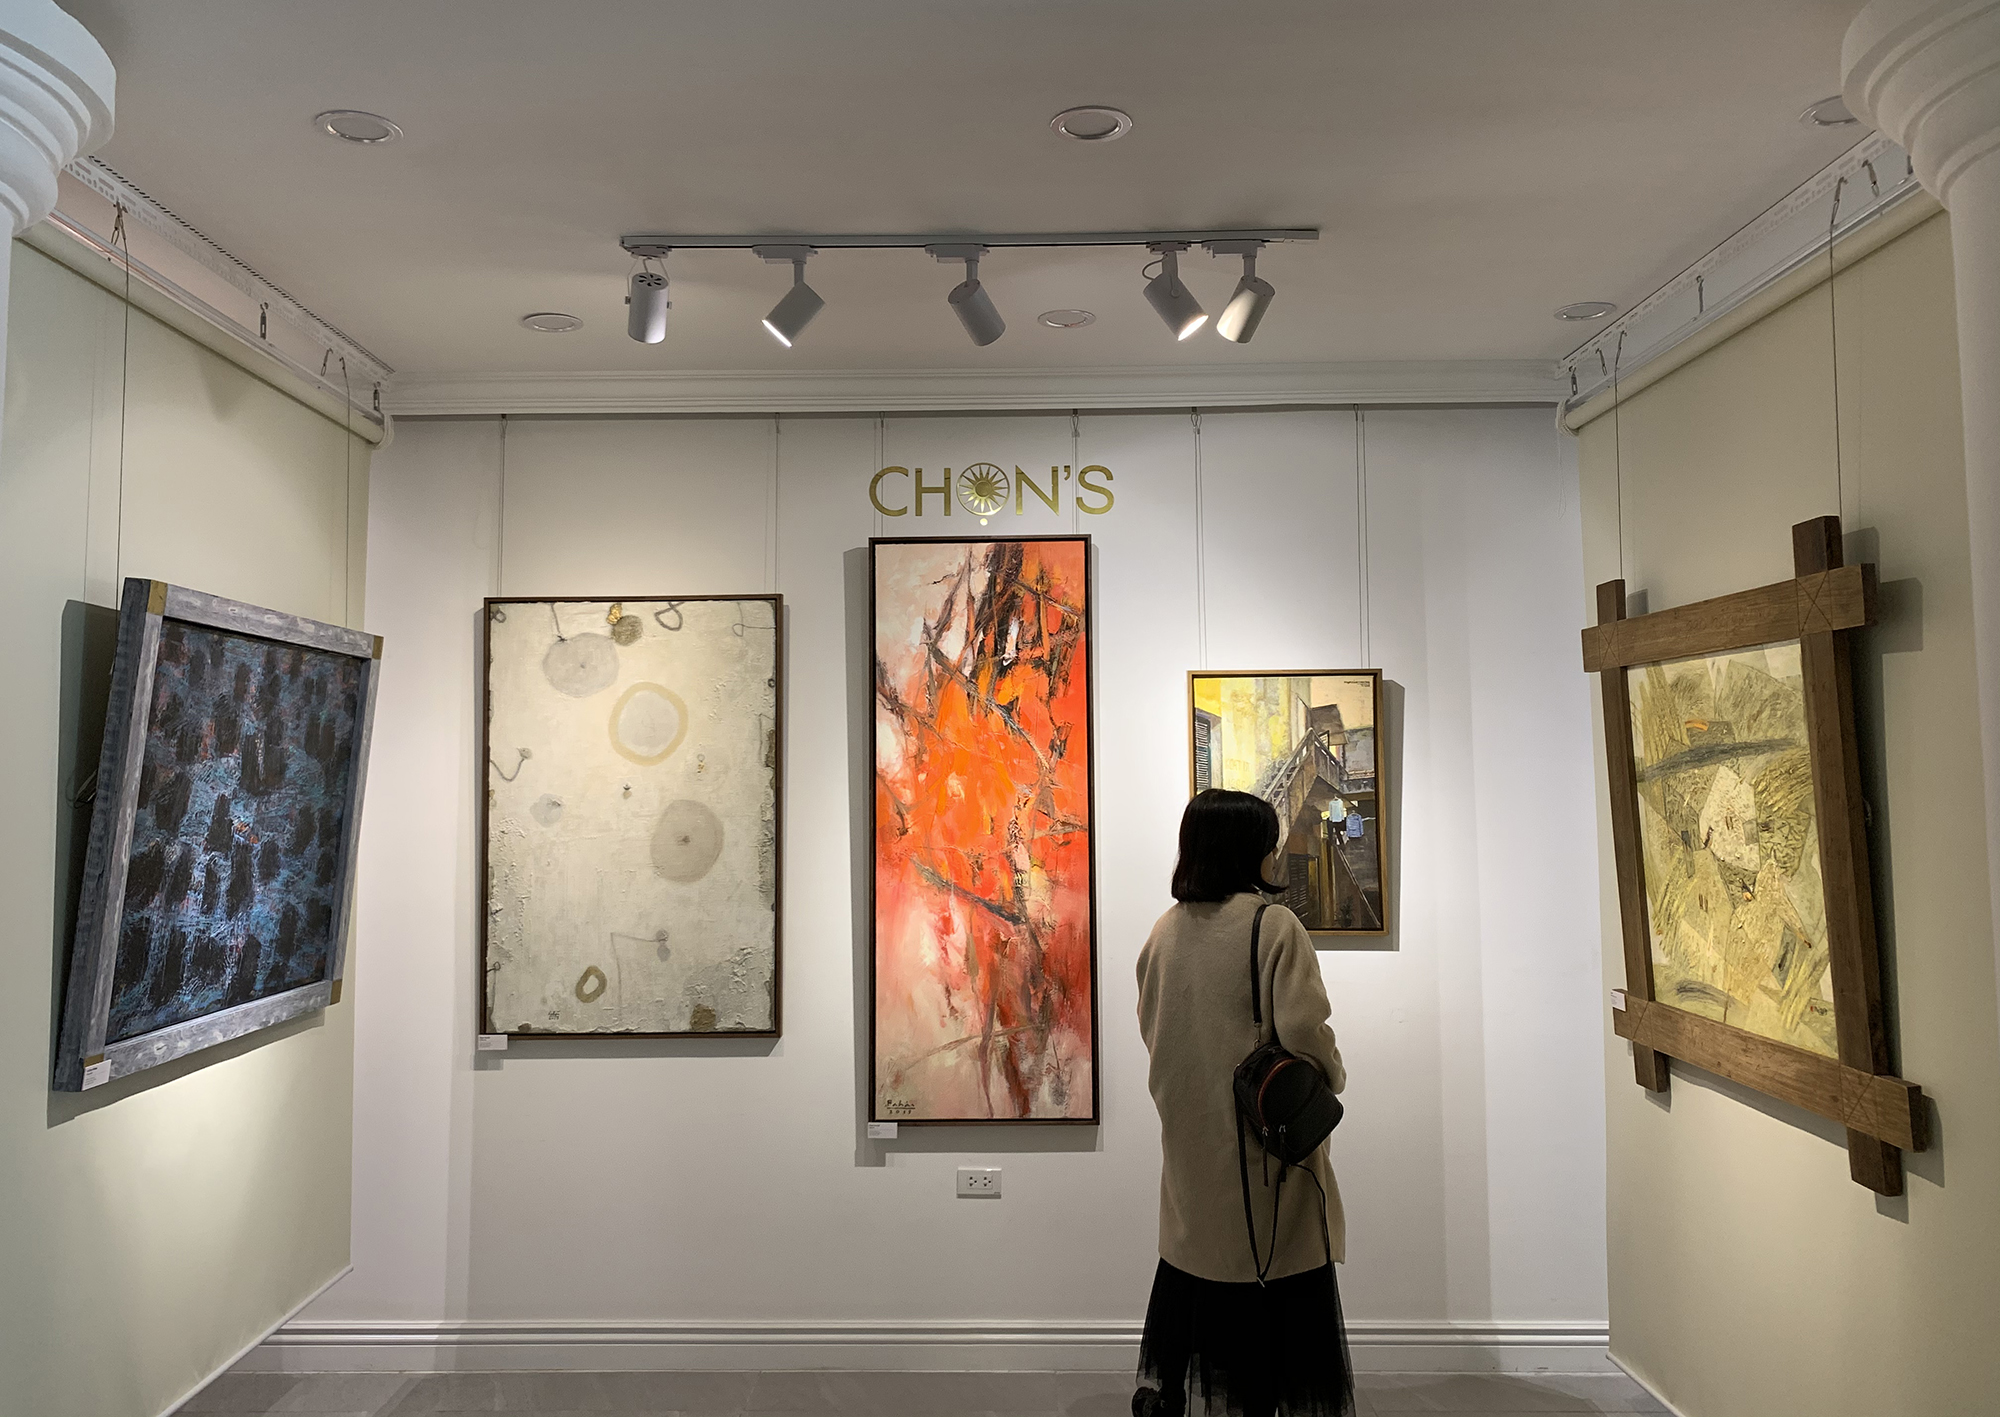 Tranh “Thiền nâu” (góc trái) của Phạm Hà Hải trong Triển lãm Những gương mặt điển hình Viet Art Now 2019 tại Nhà Đấu giá Chọn - Hà Nội tháng 12/2019.